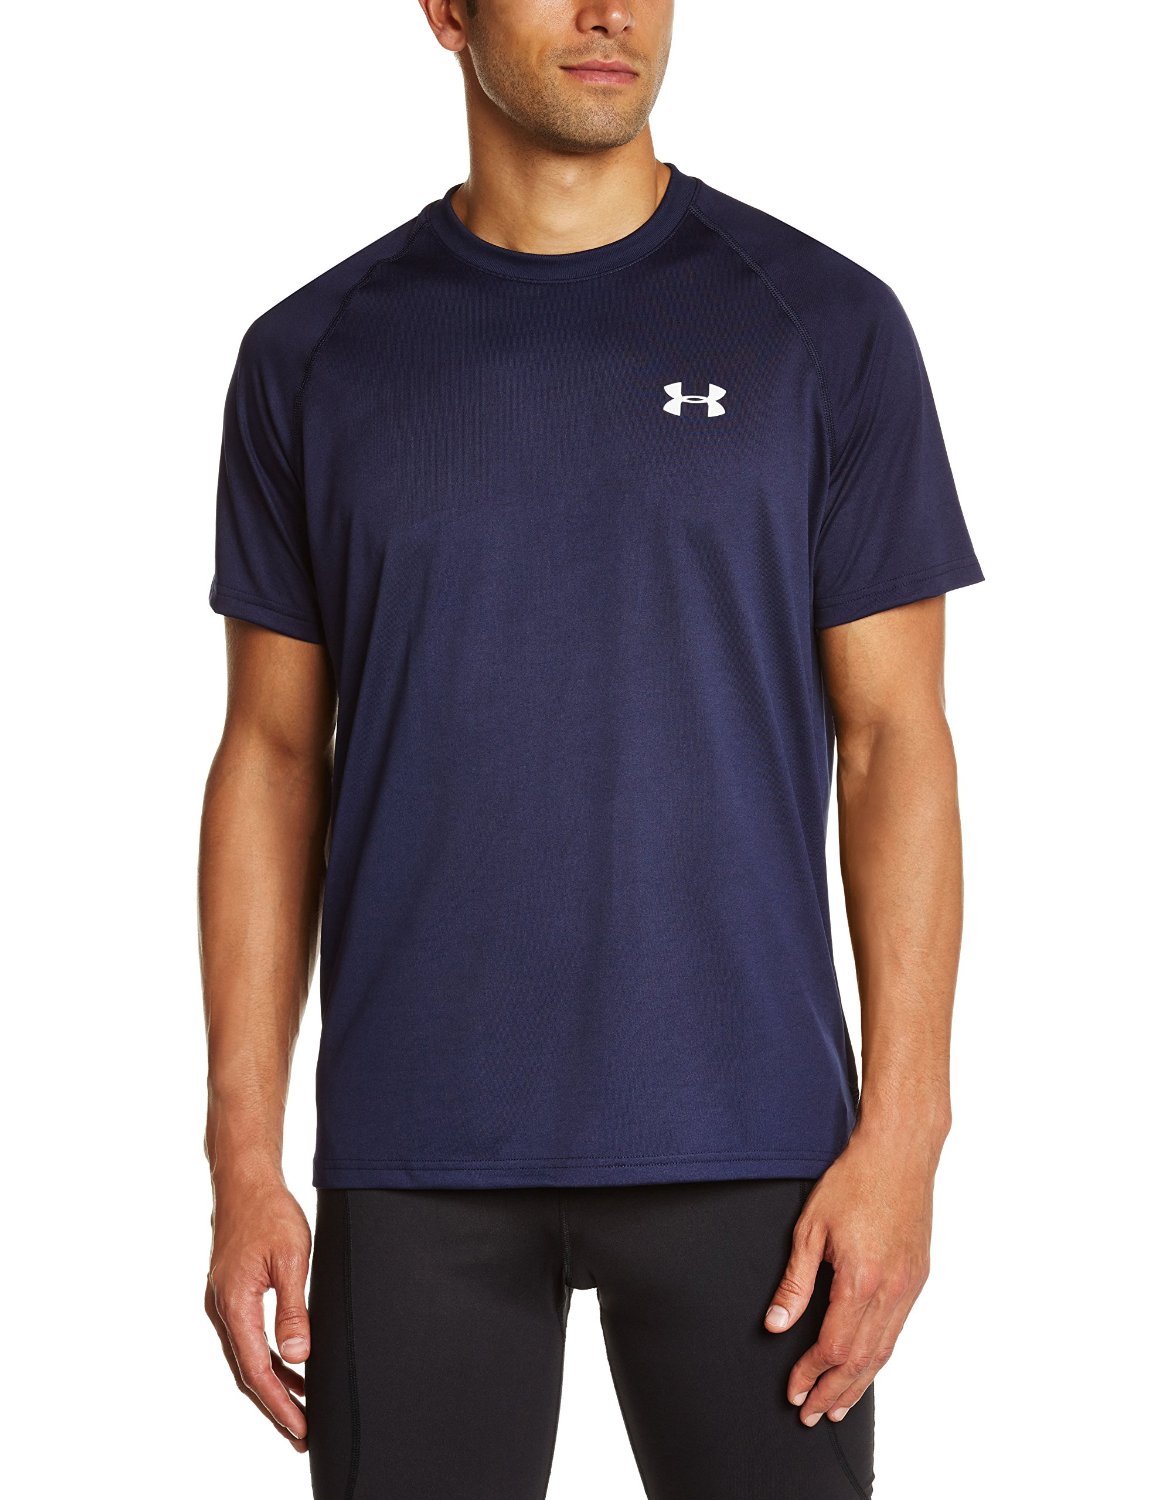 Under Armour 2015 Men's UA Tech Short Sleeve T-Shirt